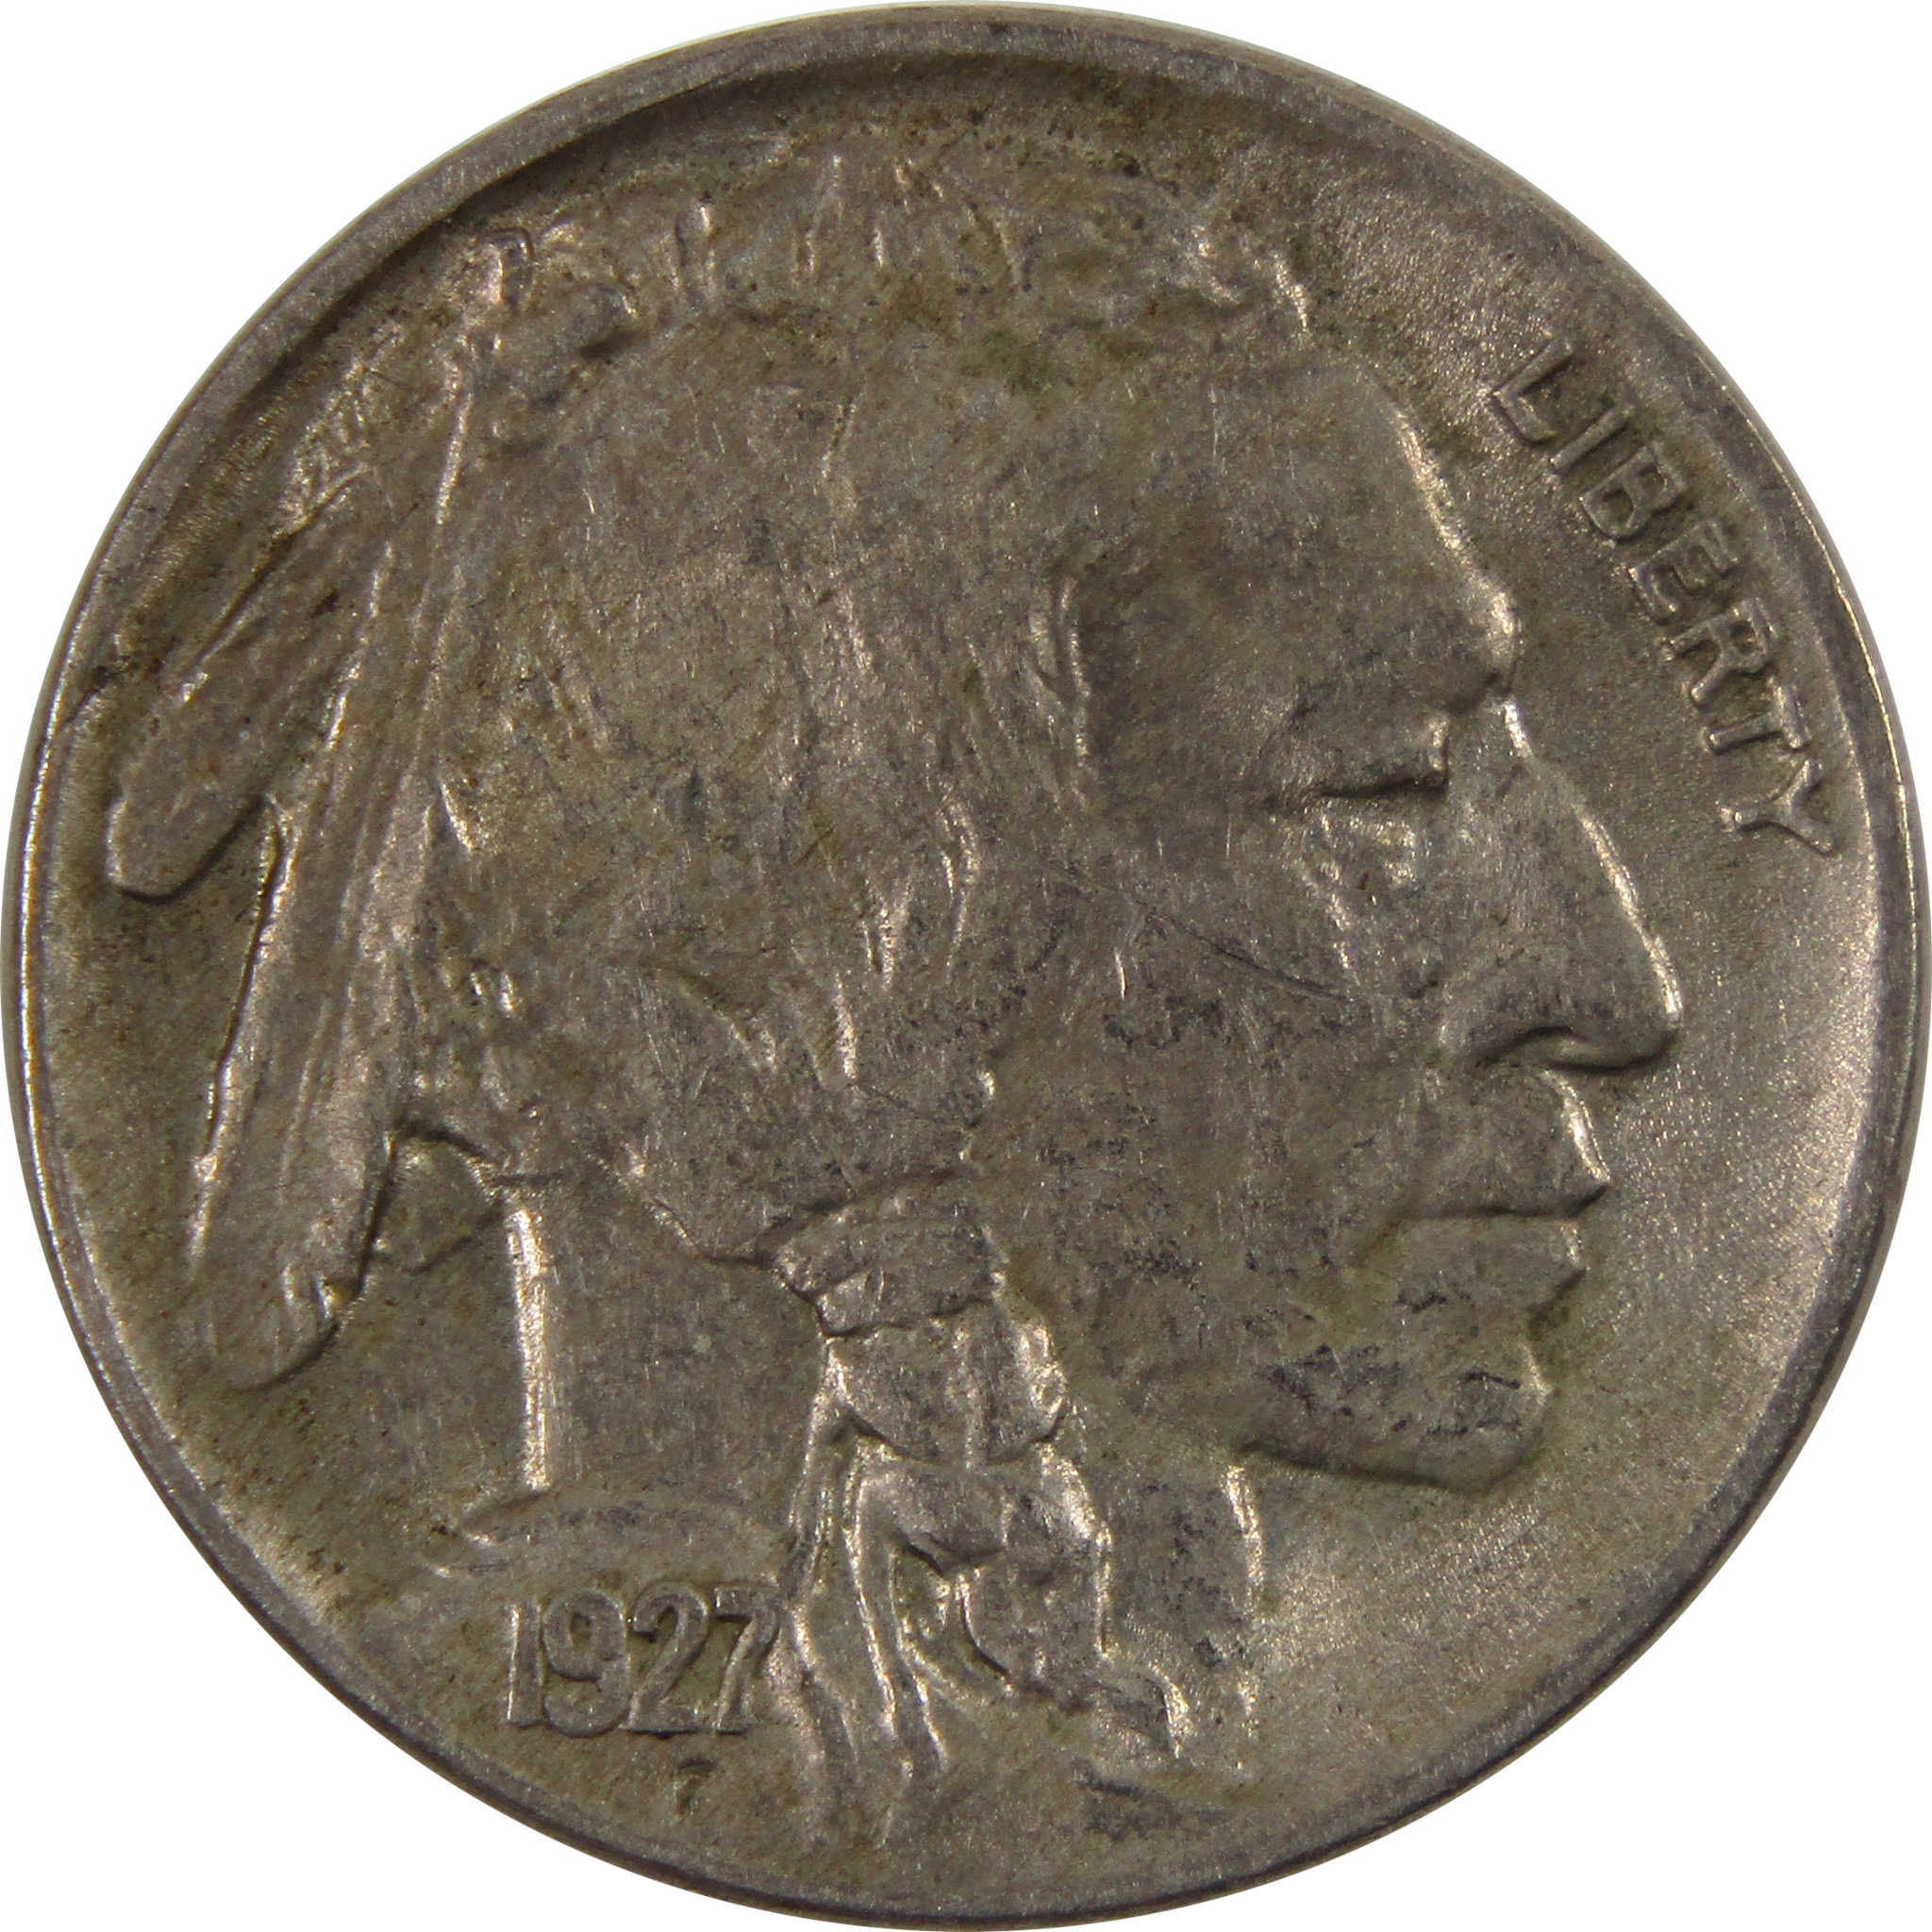 1927 Indian Head Buffalo Nickel AU About Uncirculated 5c SKU:I8395